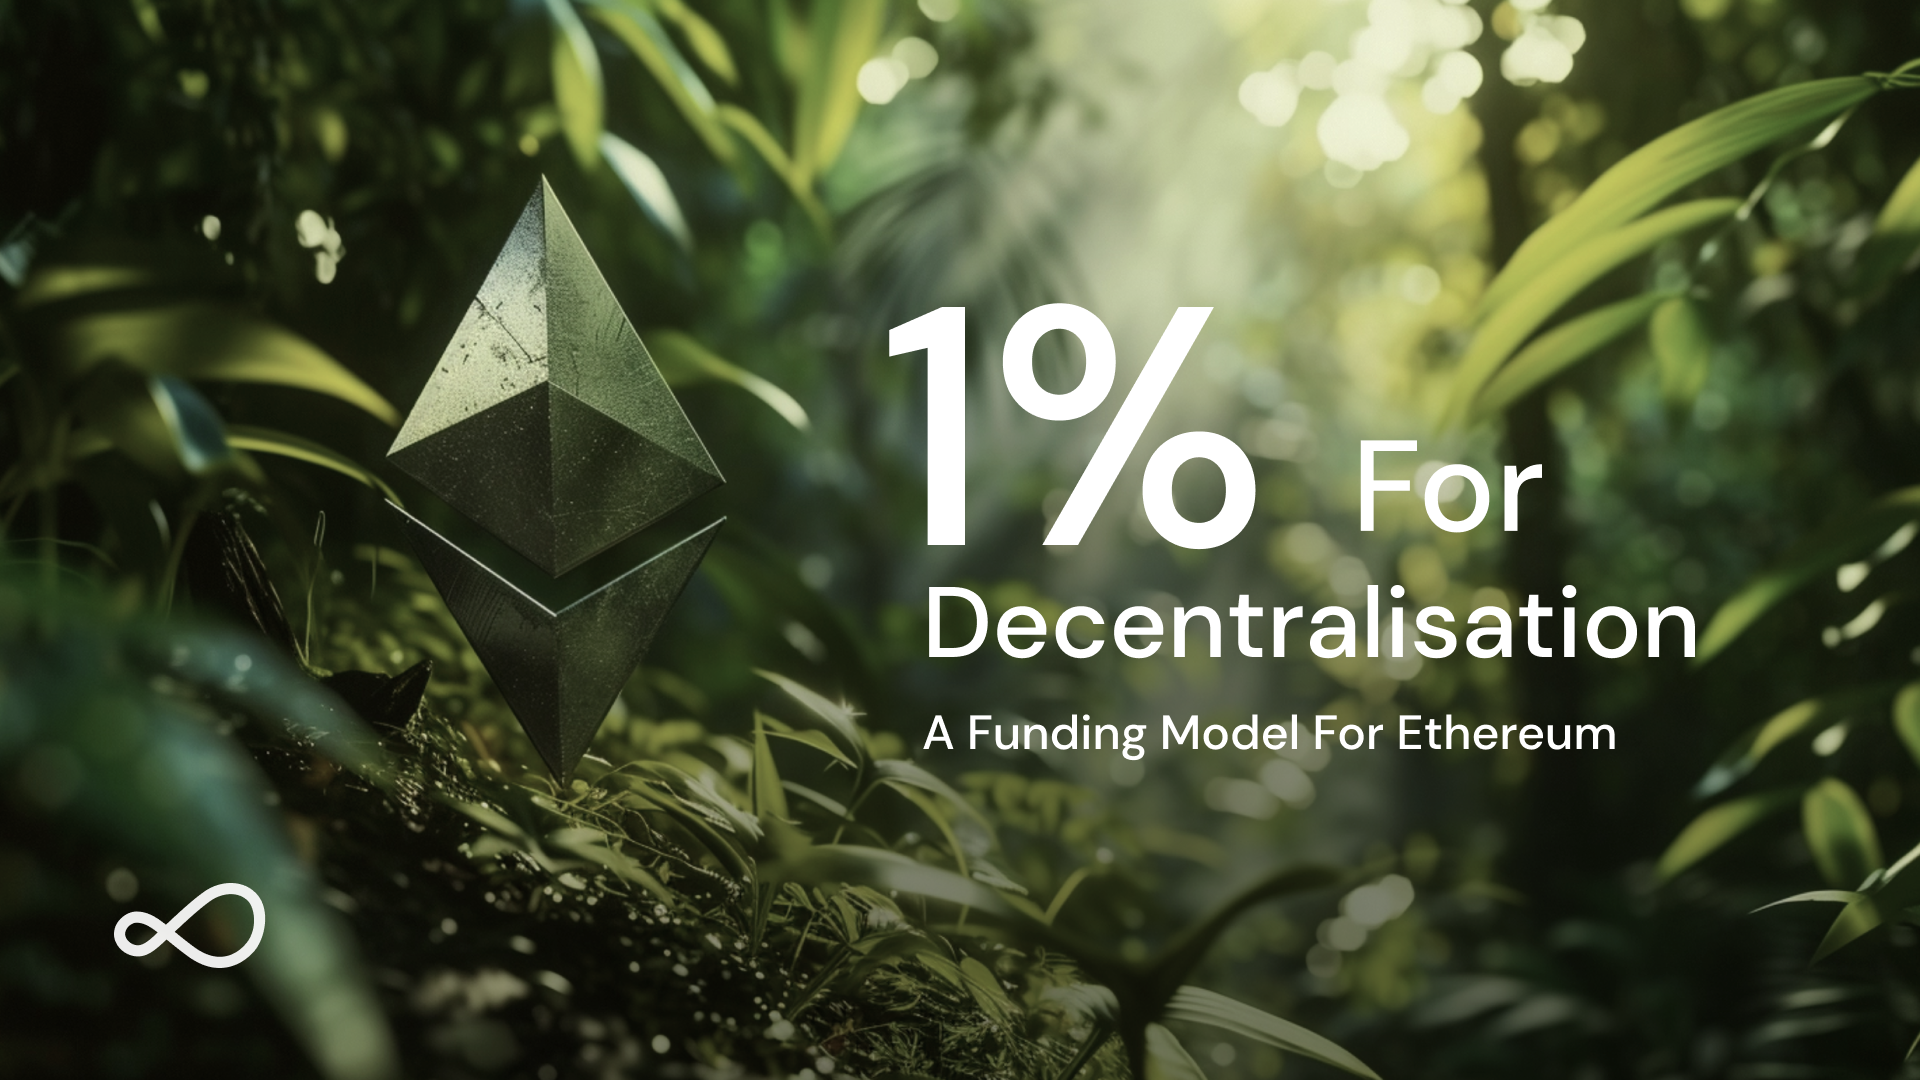 1% For Decentralisation: A Funding Model For Ethereum